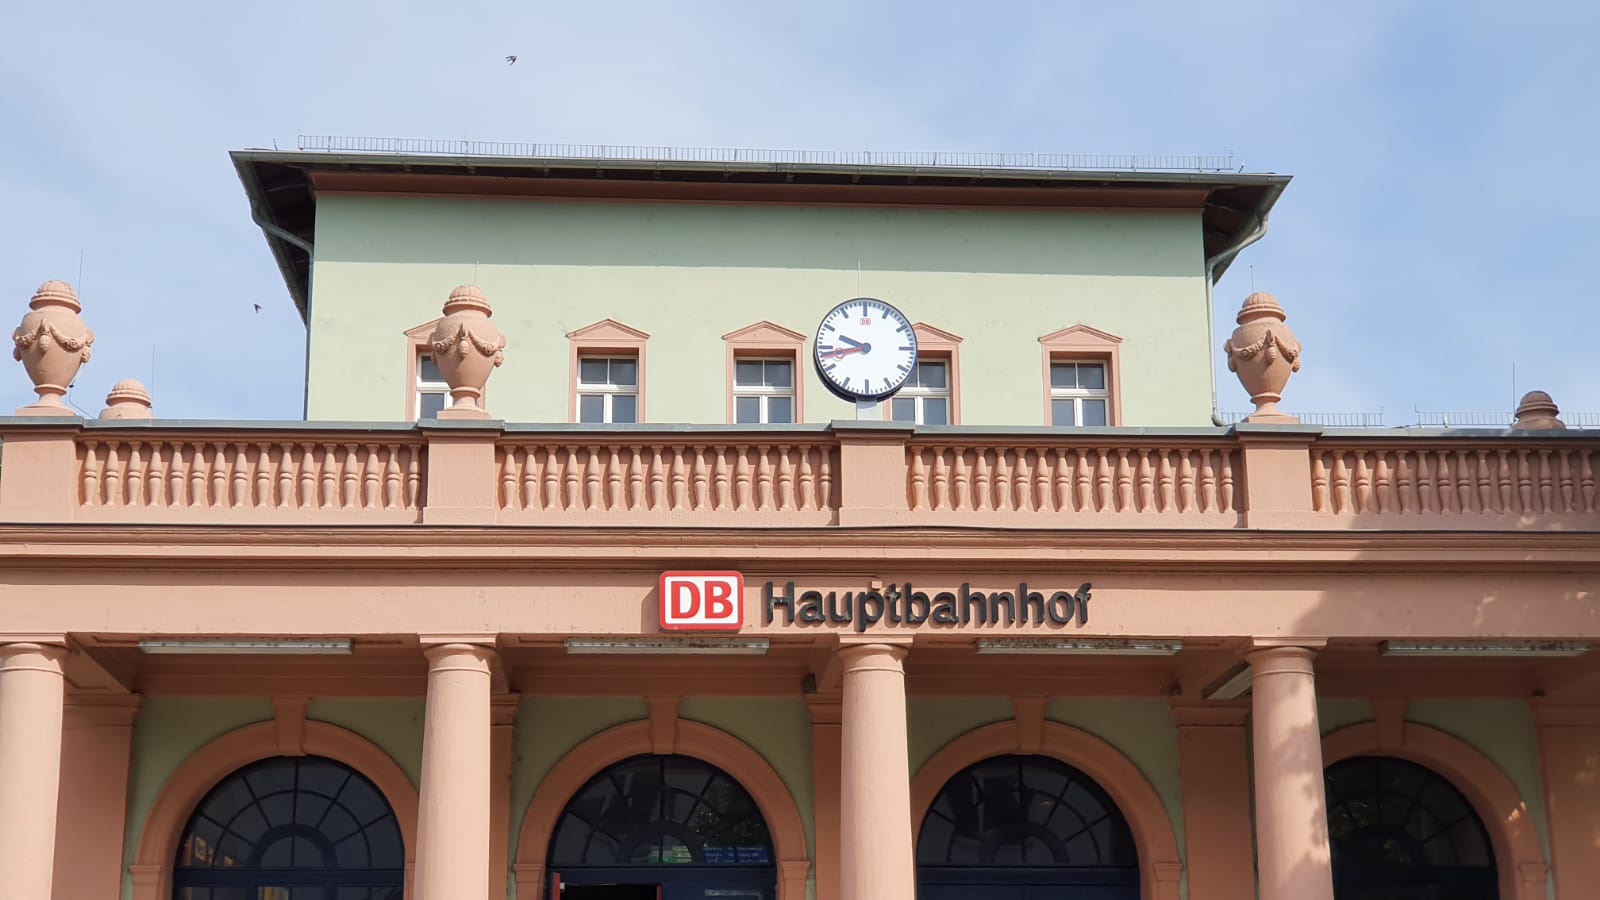 Polizisten am Bahnhof in Naumburg bemerken Marhiuana-Geruch - Mann schlägt und tritt nach den Beamten